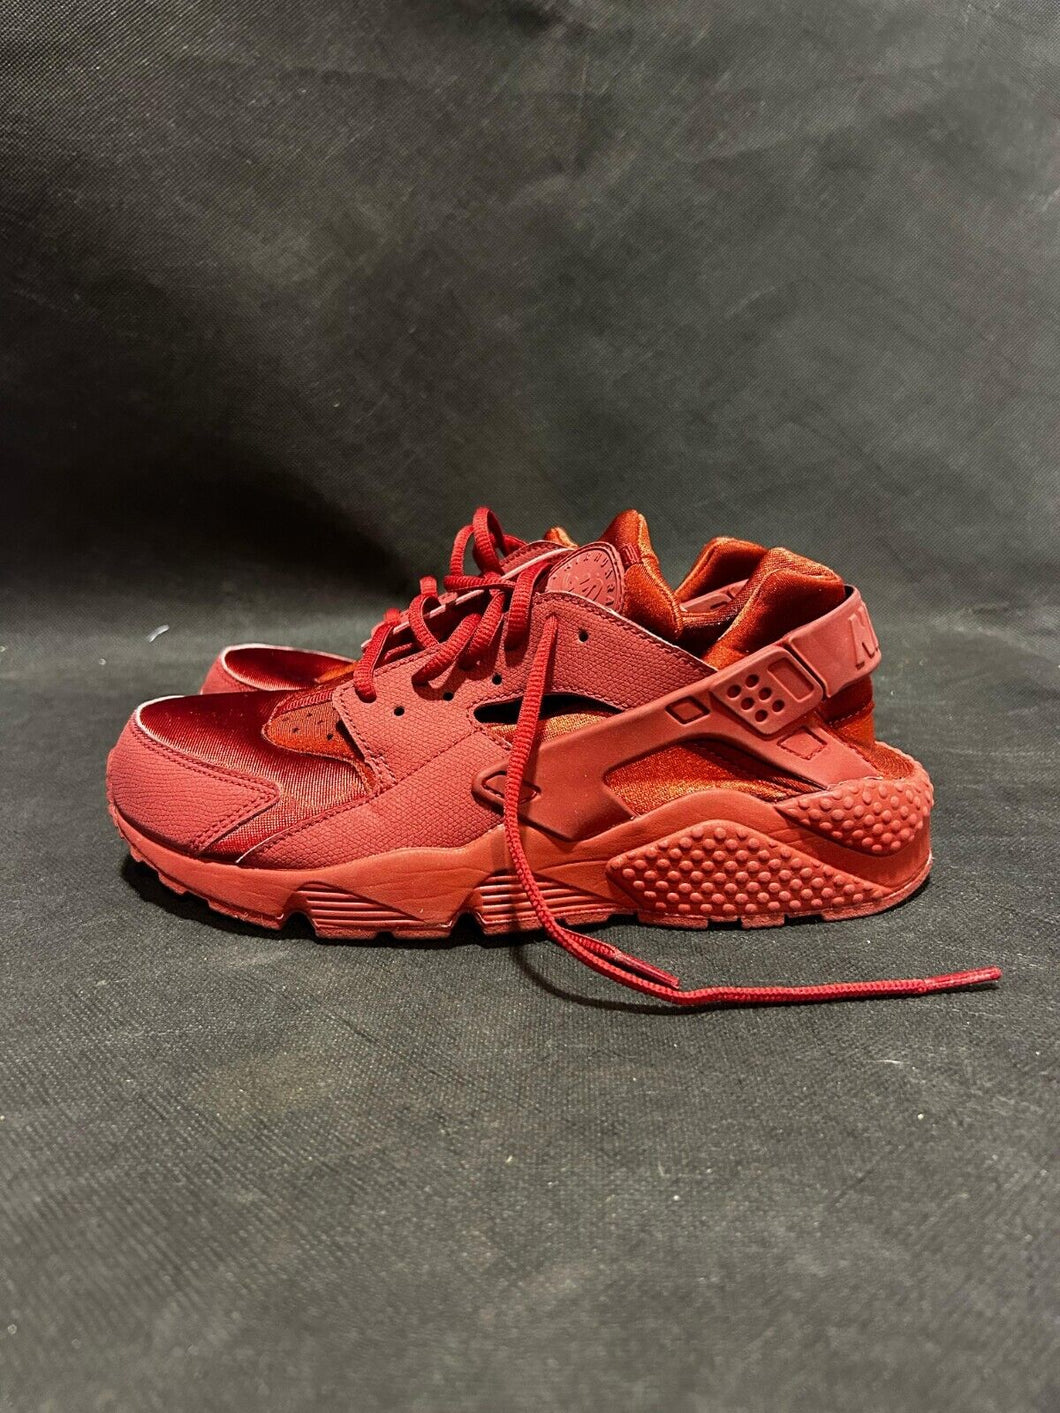 Nike Men's Huarache Running / Training Red Sneaker Size 9